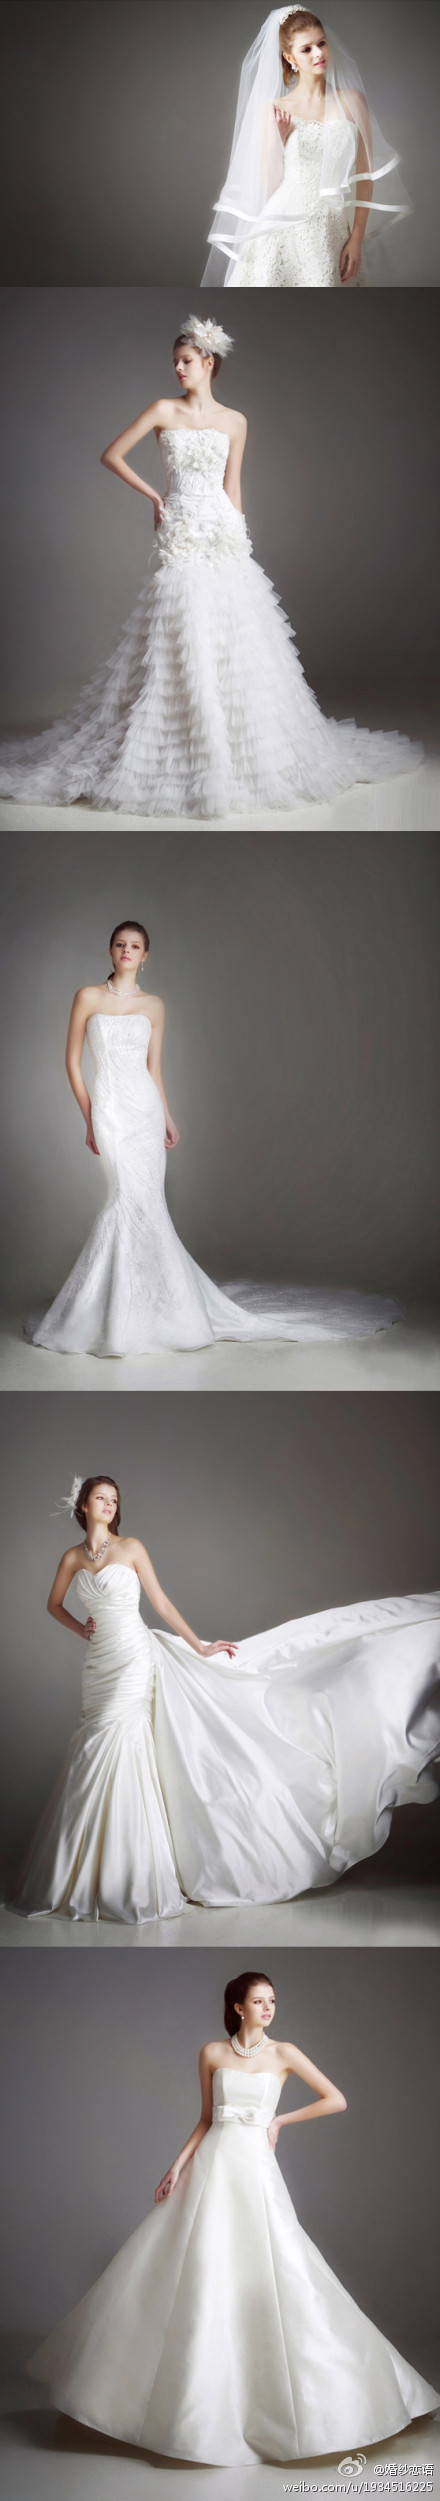 五款设计简洁不同类型的气质婚纱缎面鱼尾or荷叶边a字裙你们喜欢哪